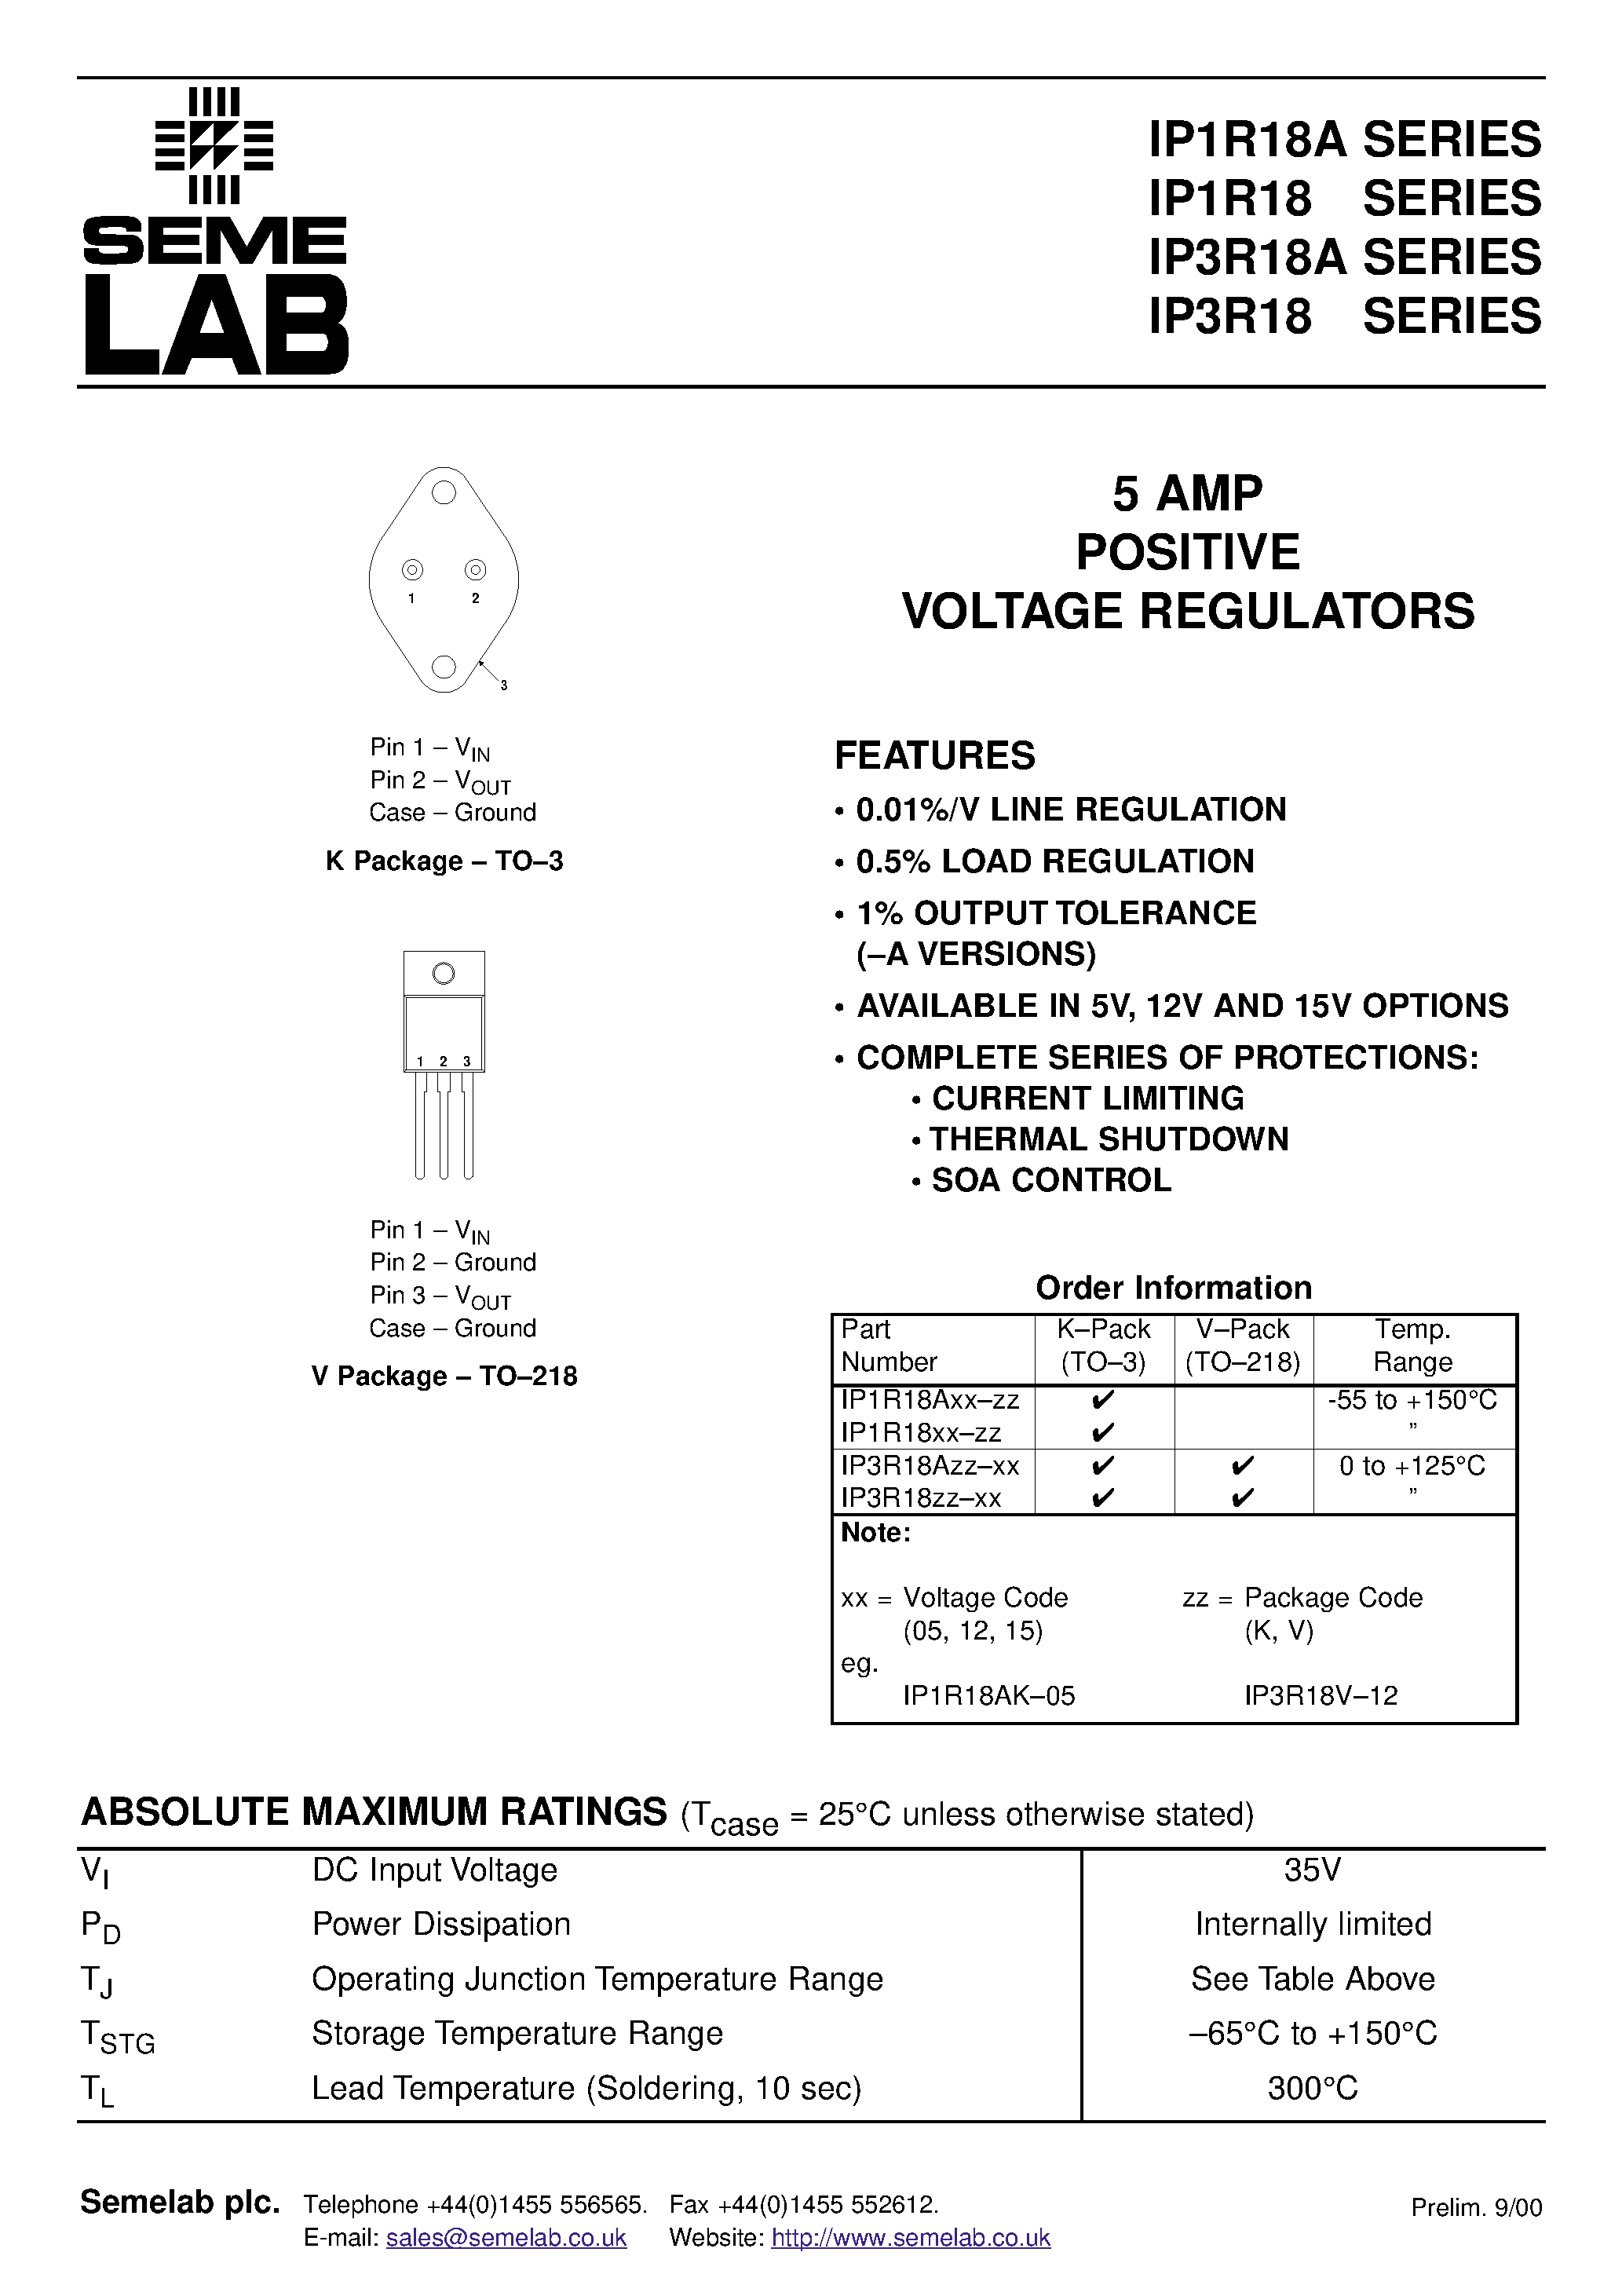 Datasheet IP1R18A12-V - 5 AMP POSITIVE VOLTAGE REGULATORS page 1